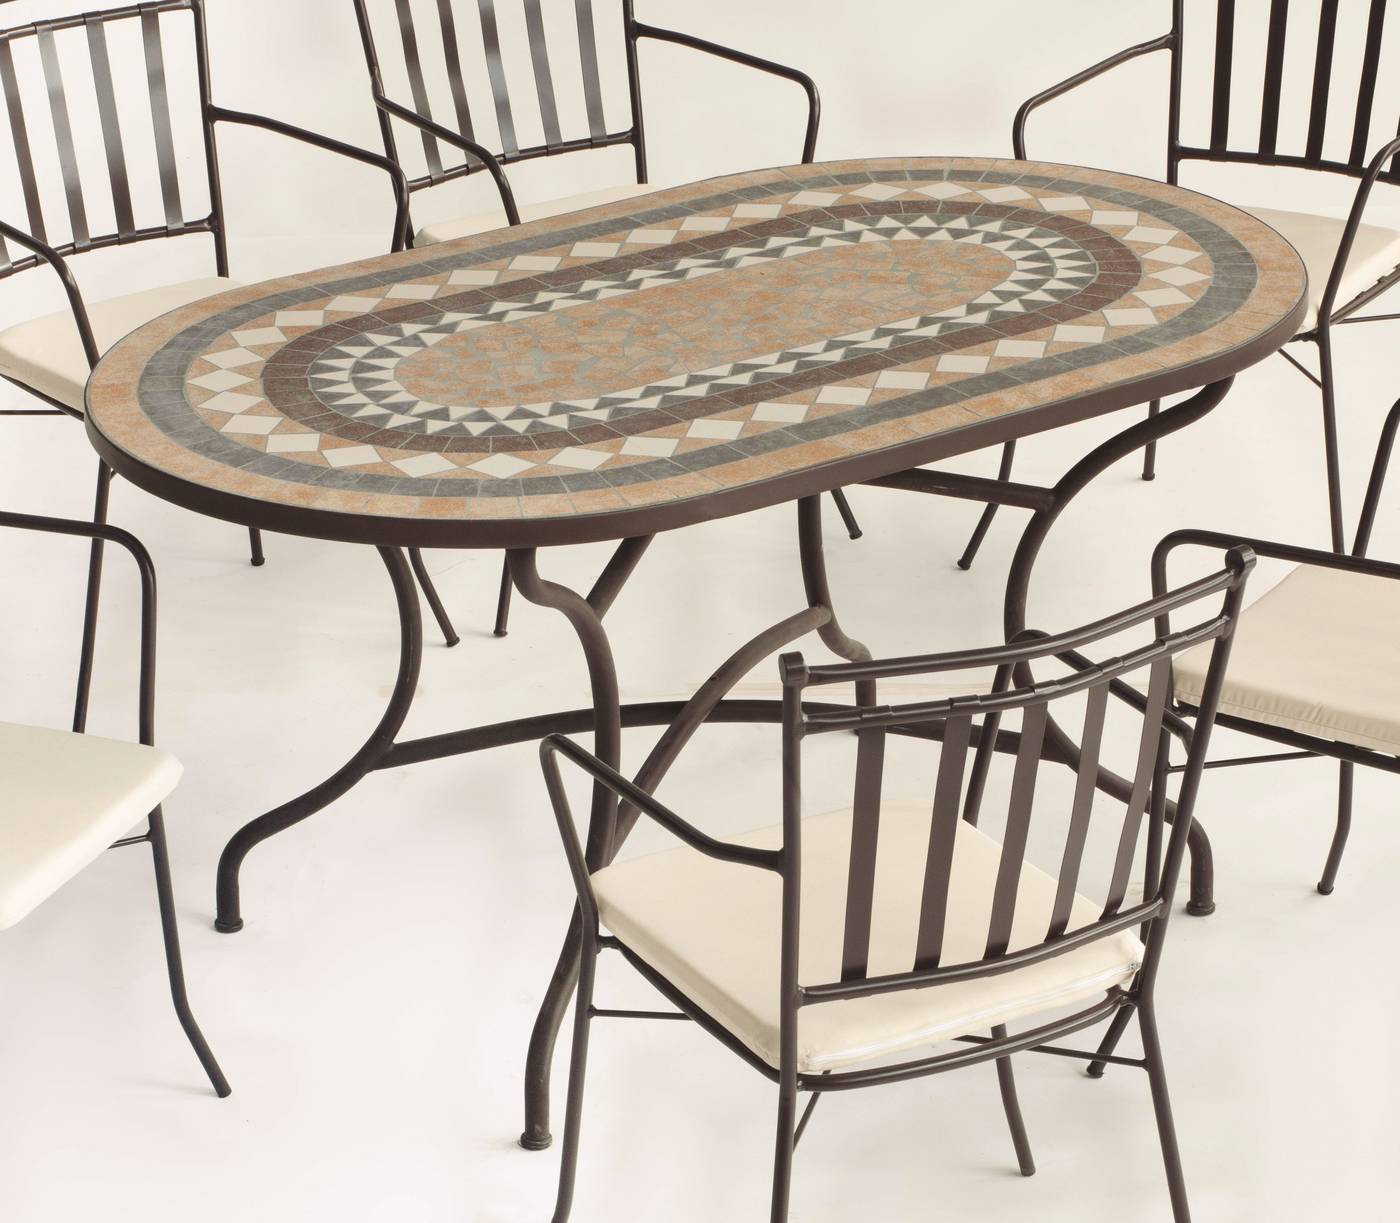 Conjunto Mosaico Laredo150-Bahia - Conjunto de forja color marrón: mesa con tablero mosaico ovalado de 150 cm + 4 sillones de ratán con cojines.